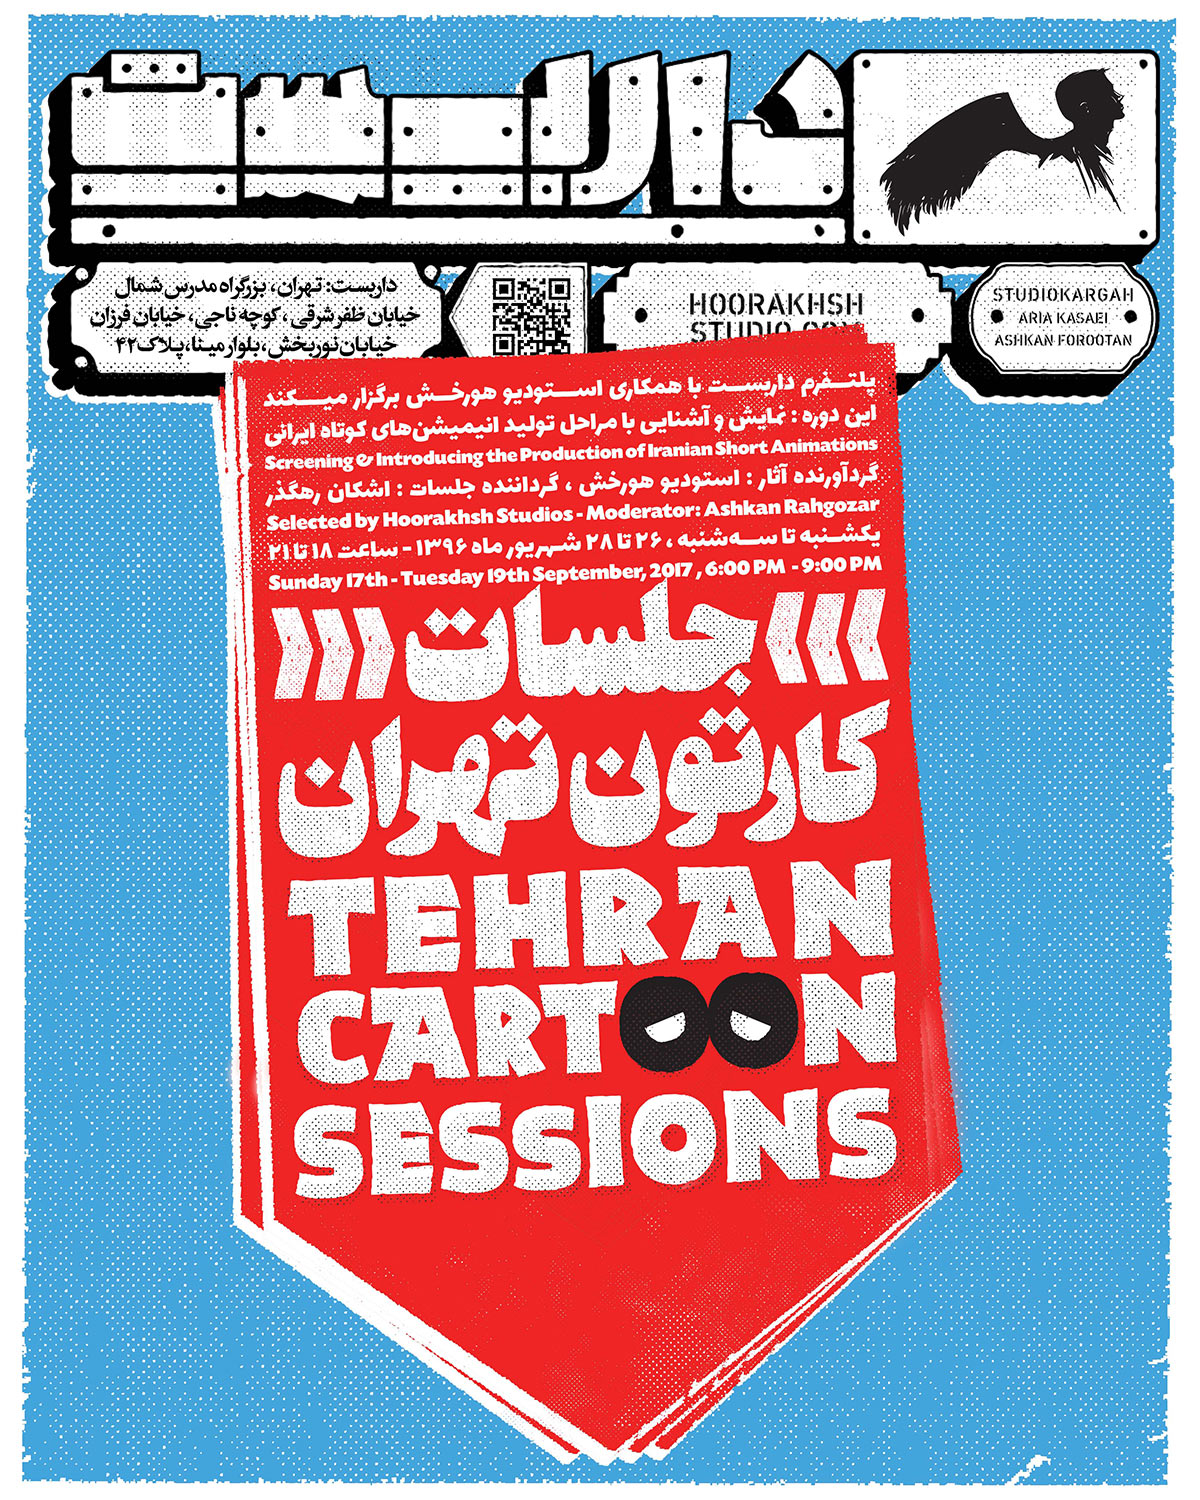 Tehran Cartoon Sessions poster.